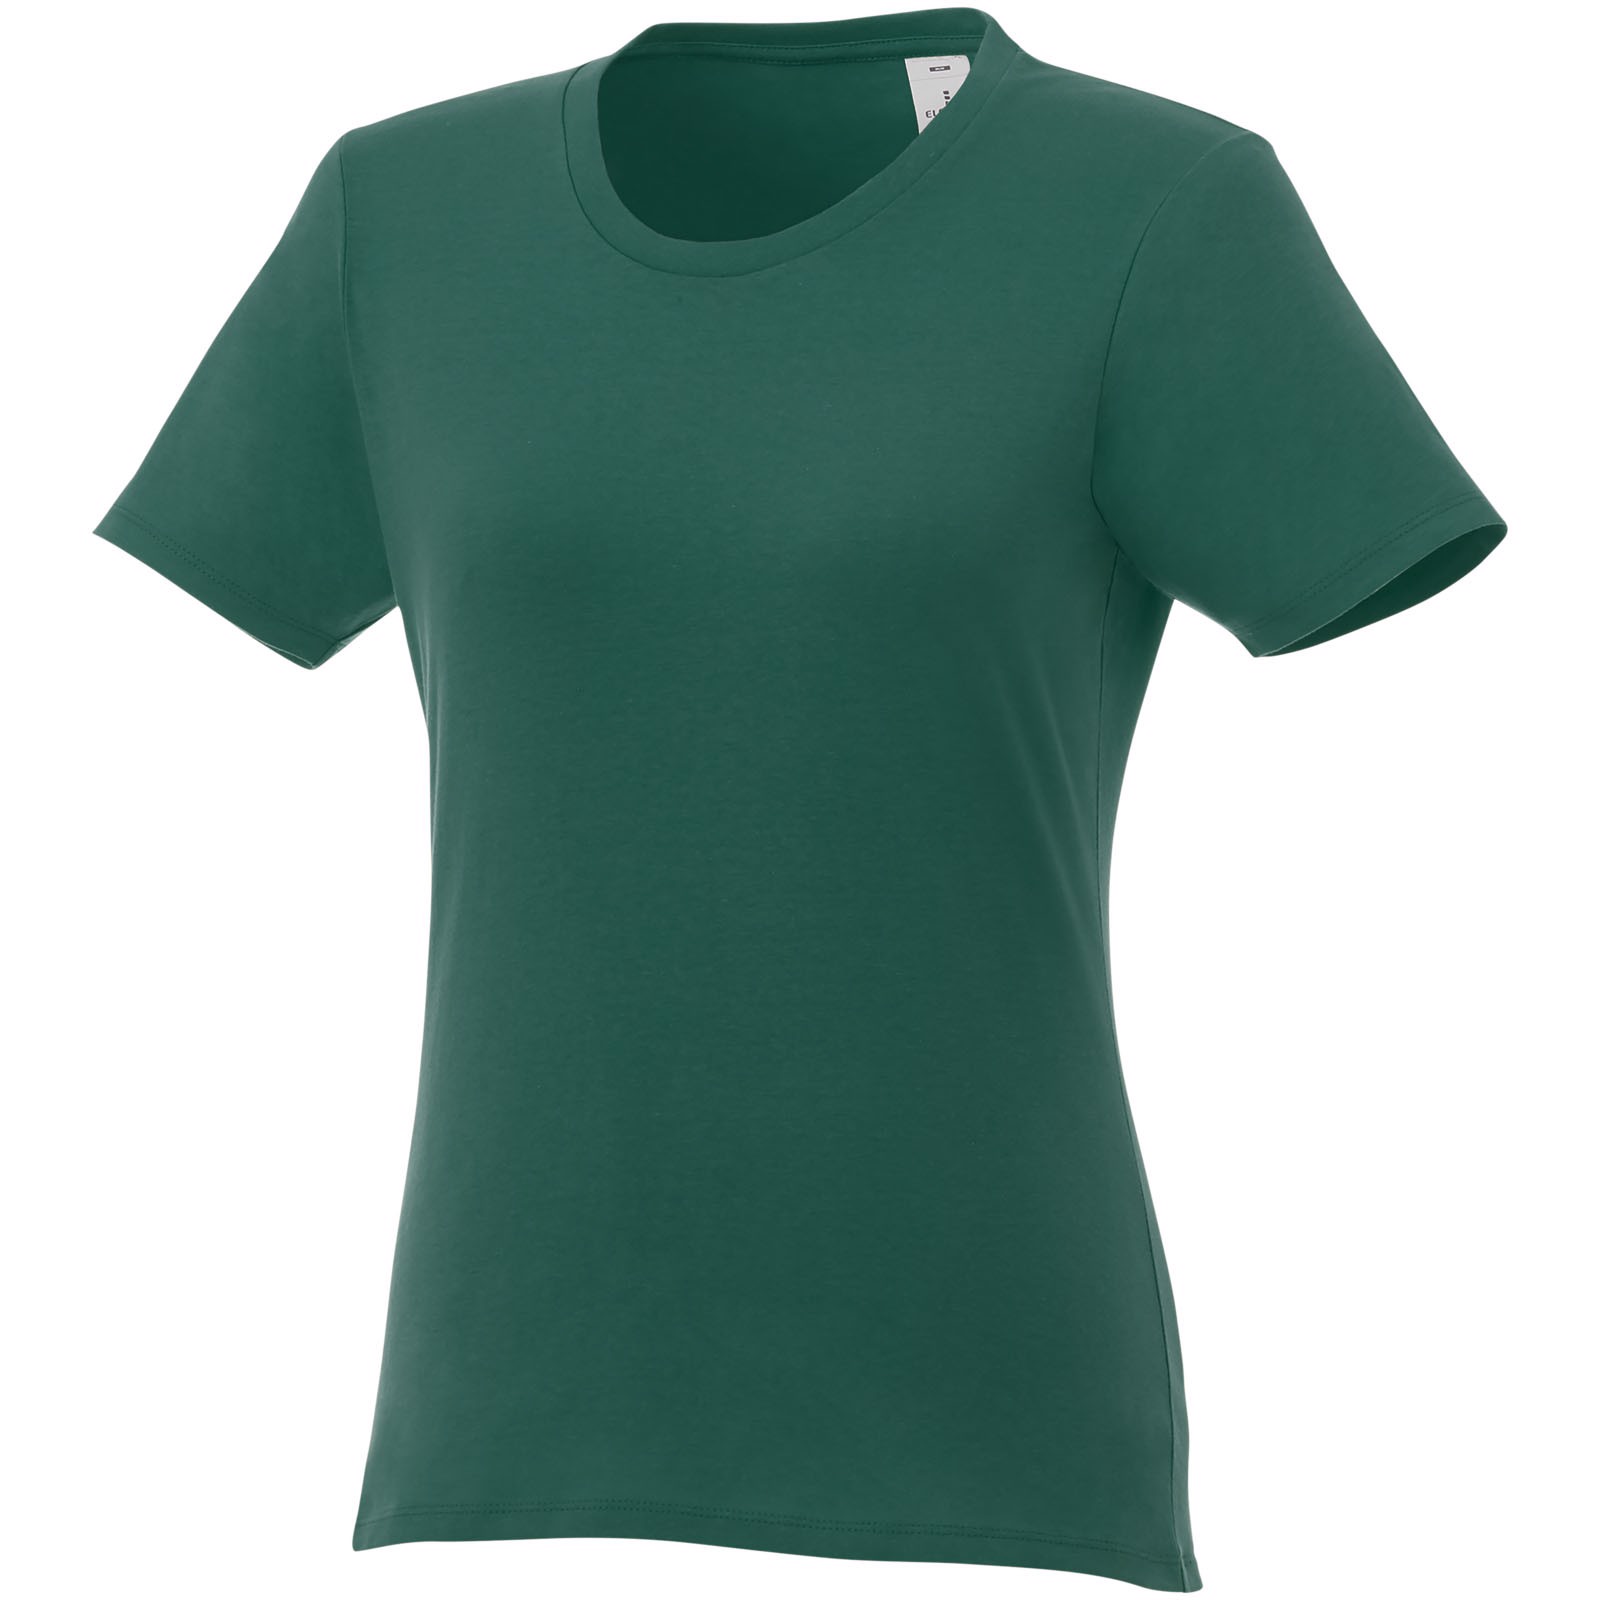 Dámské triko Heros s krátkým rukávem - Lesní zelená / S